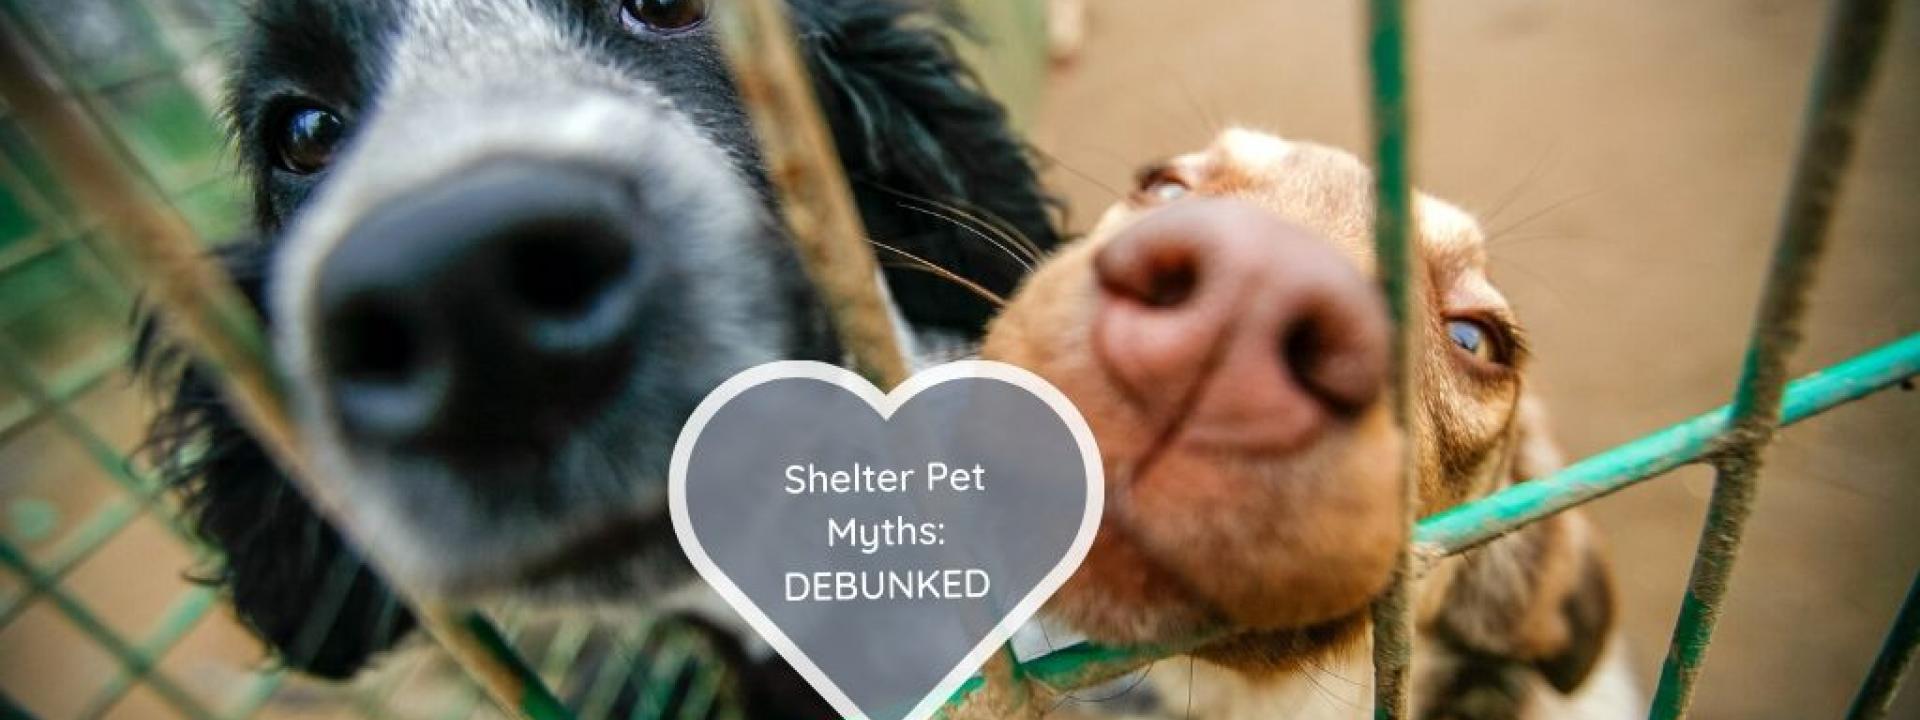 shelter-pet-myths-debunked.jpg